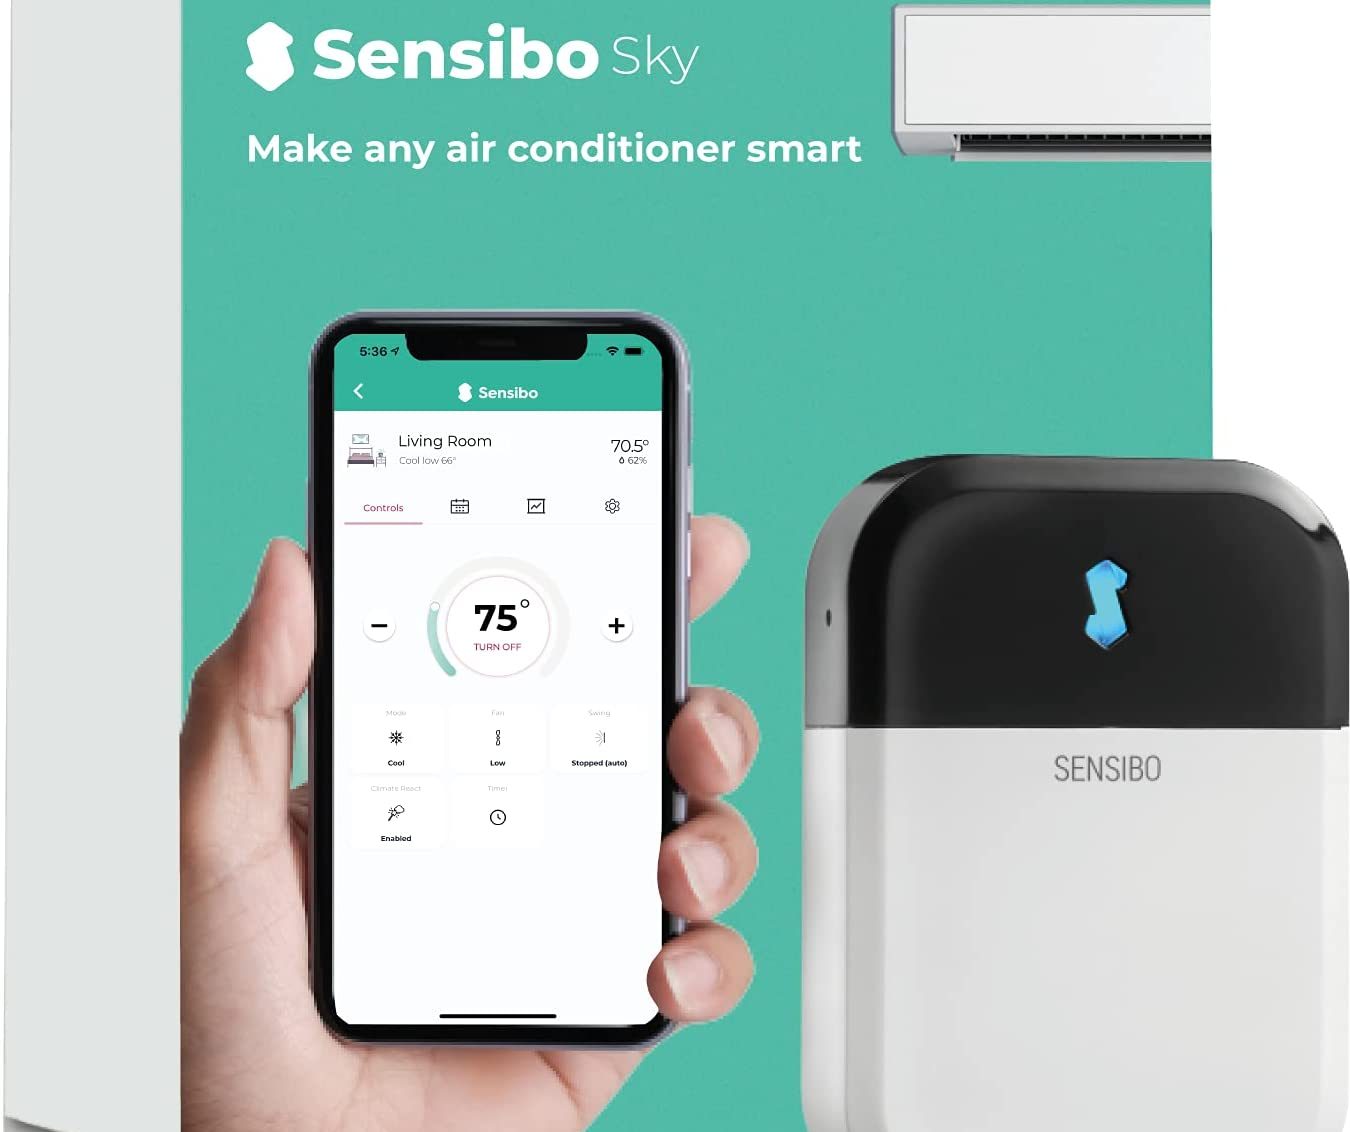 Sensibo Air, controlla e rendi smart qualsiasi condizionatore e taglia la bolletta